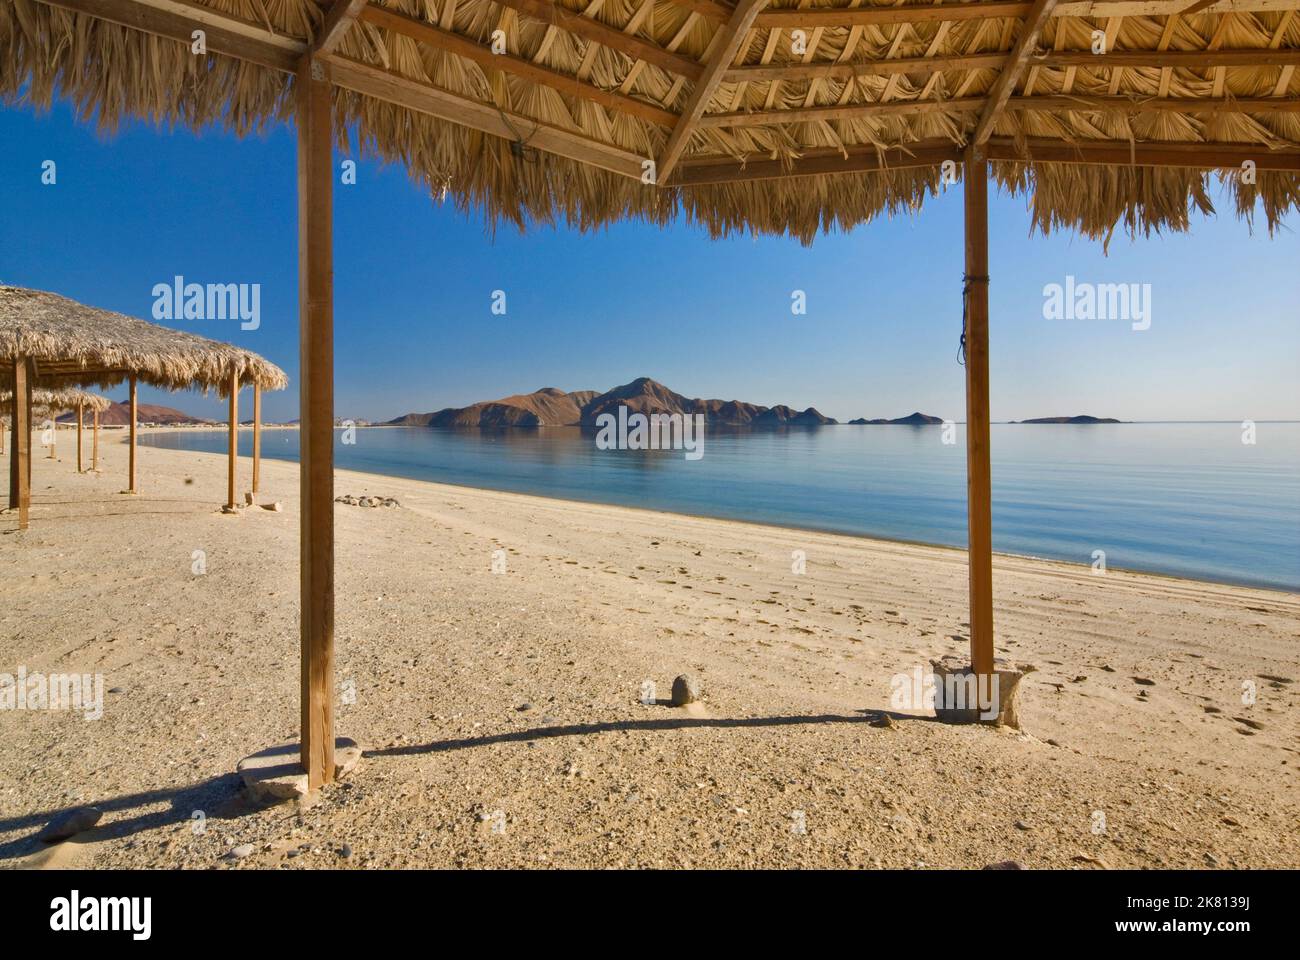 Palapas on Gulf of California (Sea of Cortez) beach, Bahia San Luis Gonzaga, Campo Rancho Grande, Baja California, Mexico Stock Photo